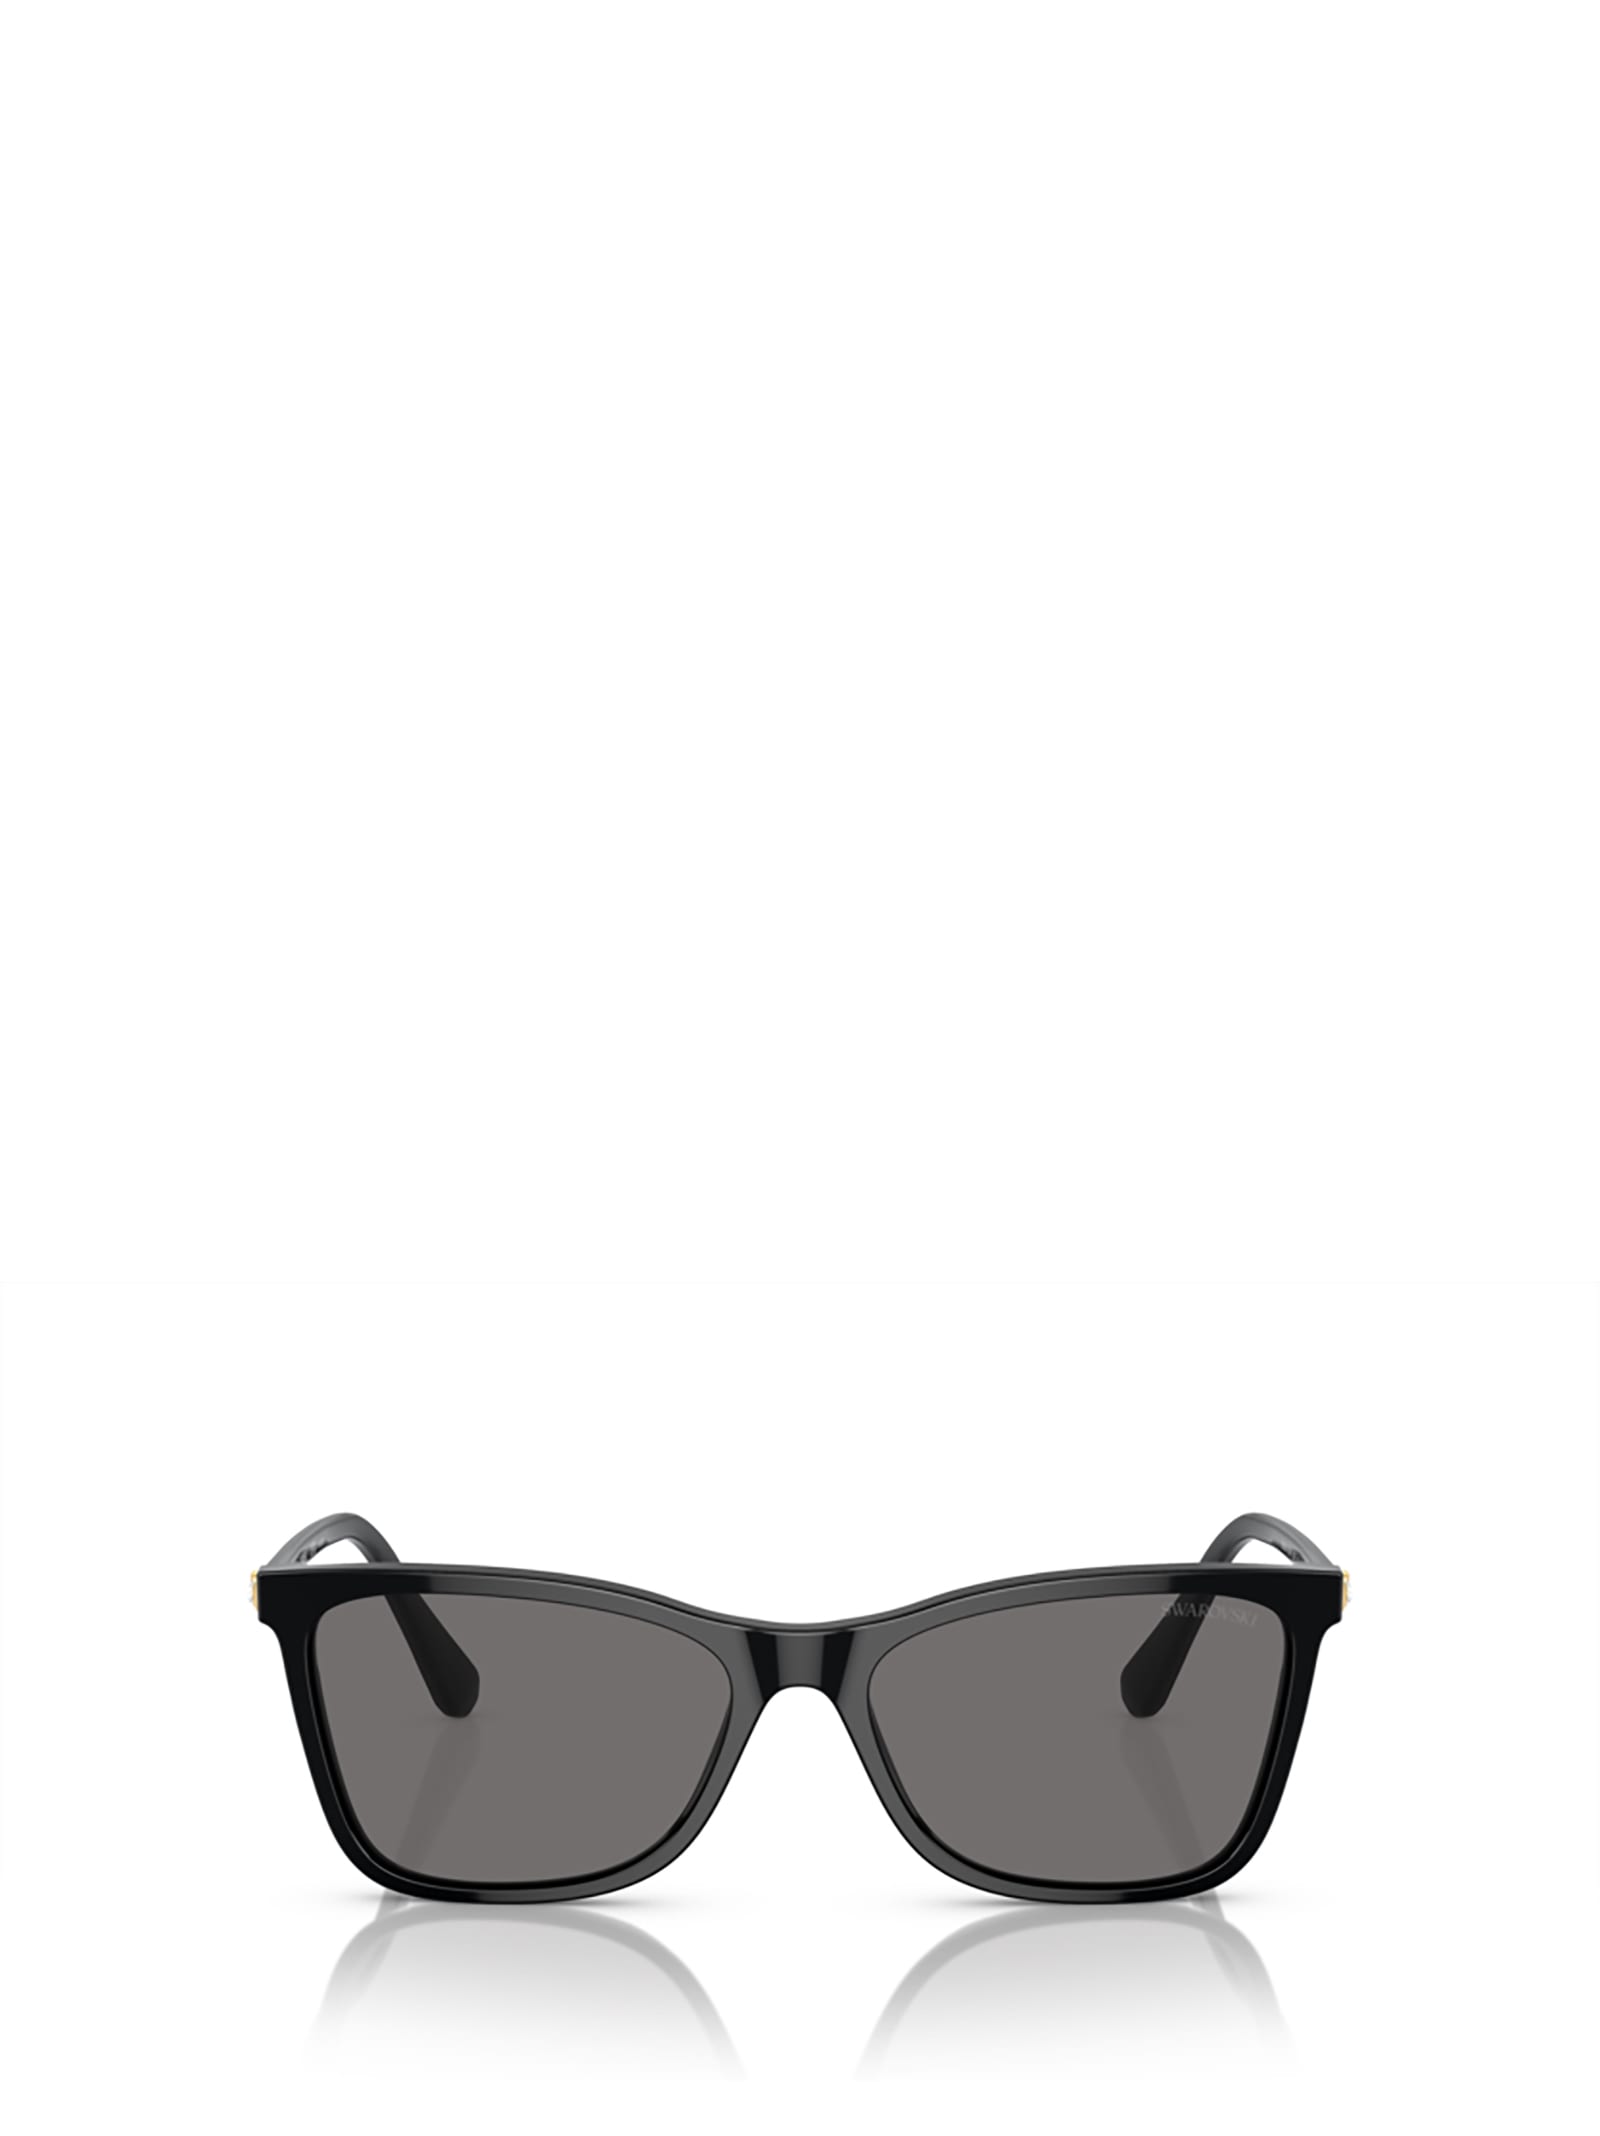 Swarovski Sk6004 Black Sunglasses